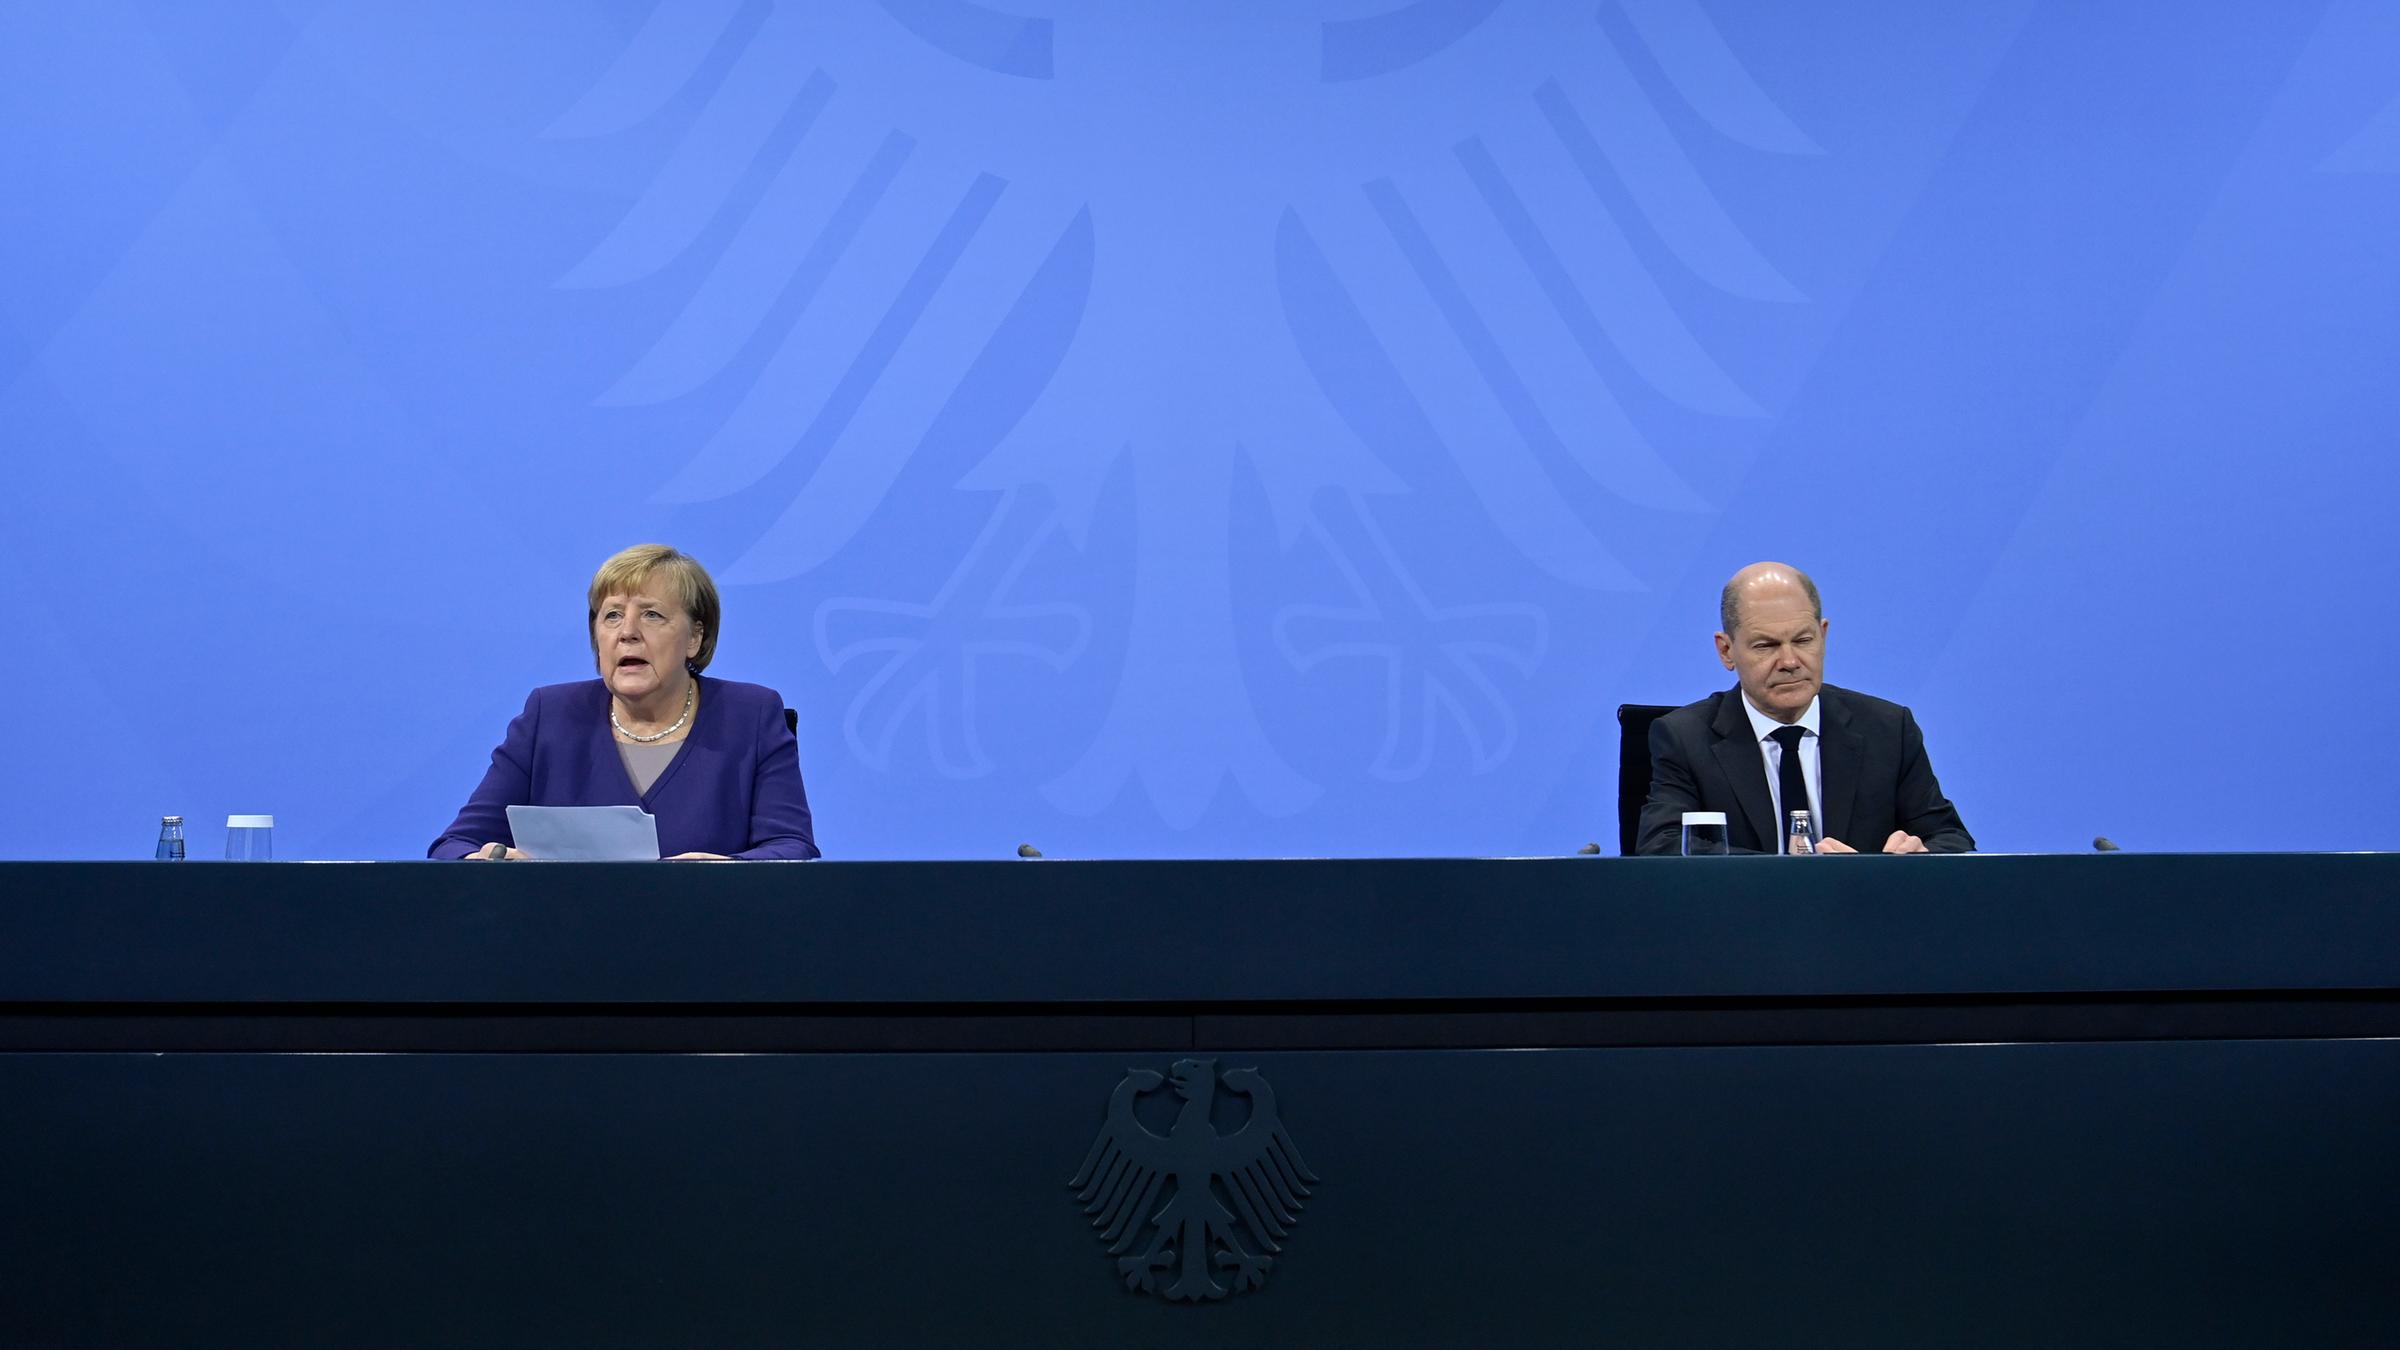 Bund-Ländertreffen zur Corona-Pandemie: Angela Merkel und Olaf Scholz s...</p>

                        <a href=